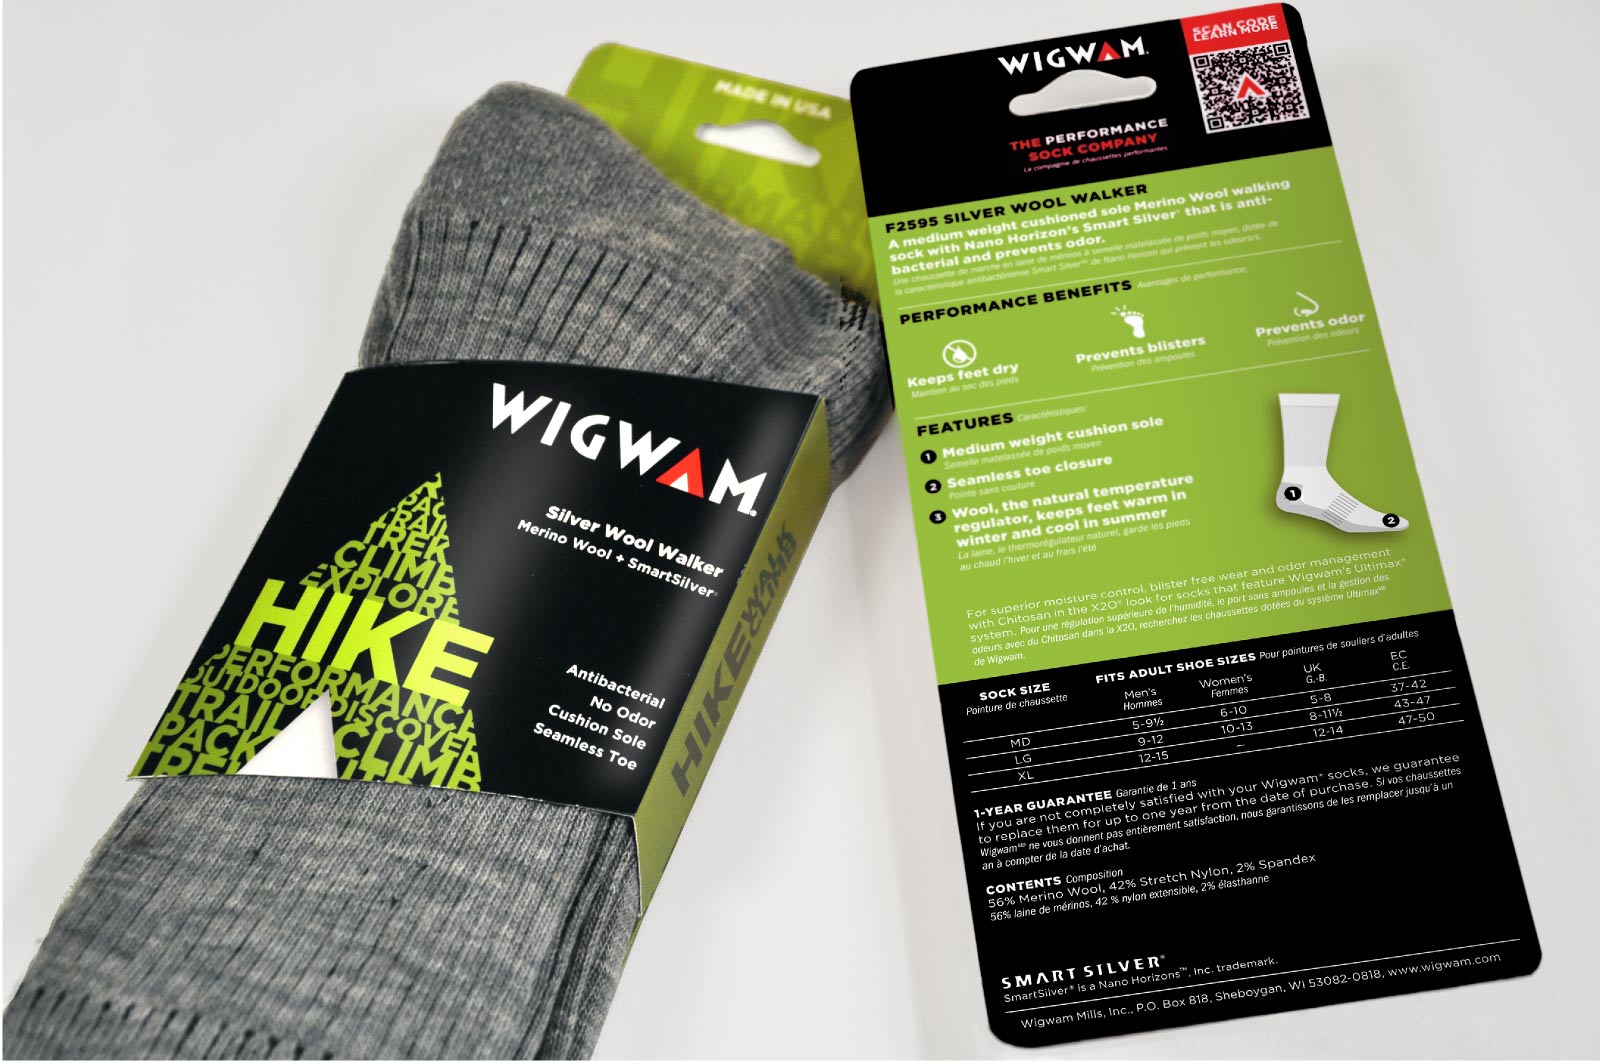 mslk-wigwam-packaging-2